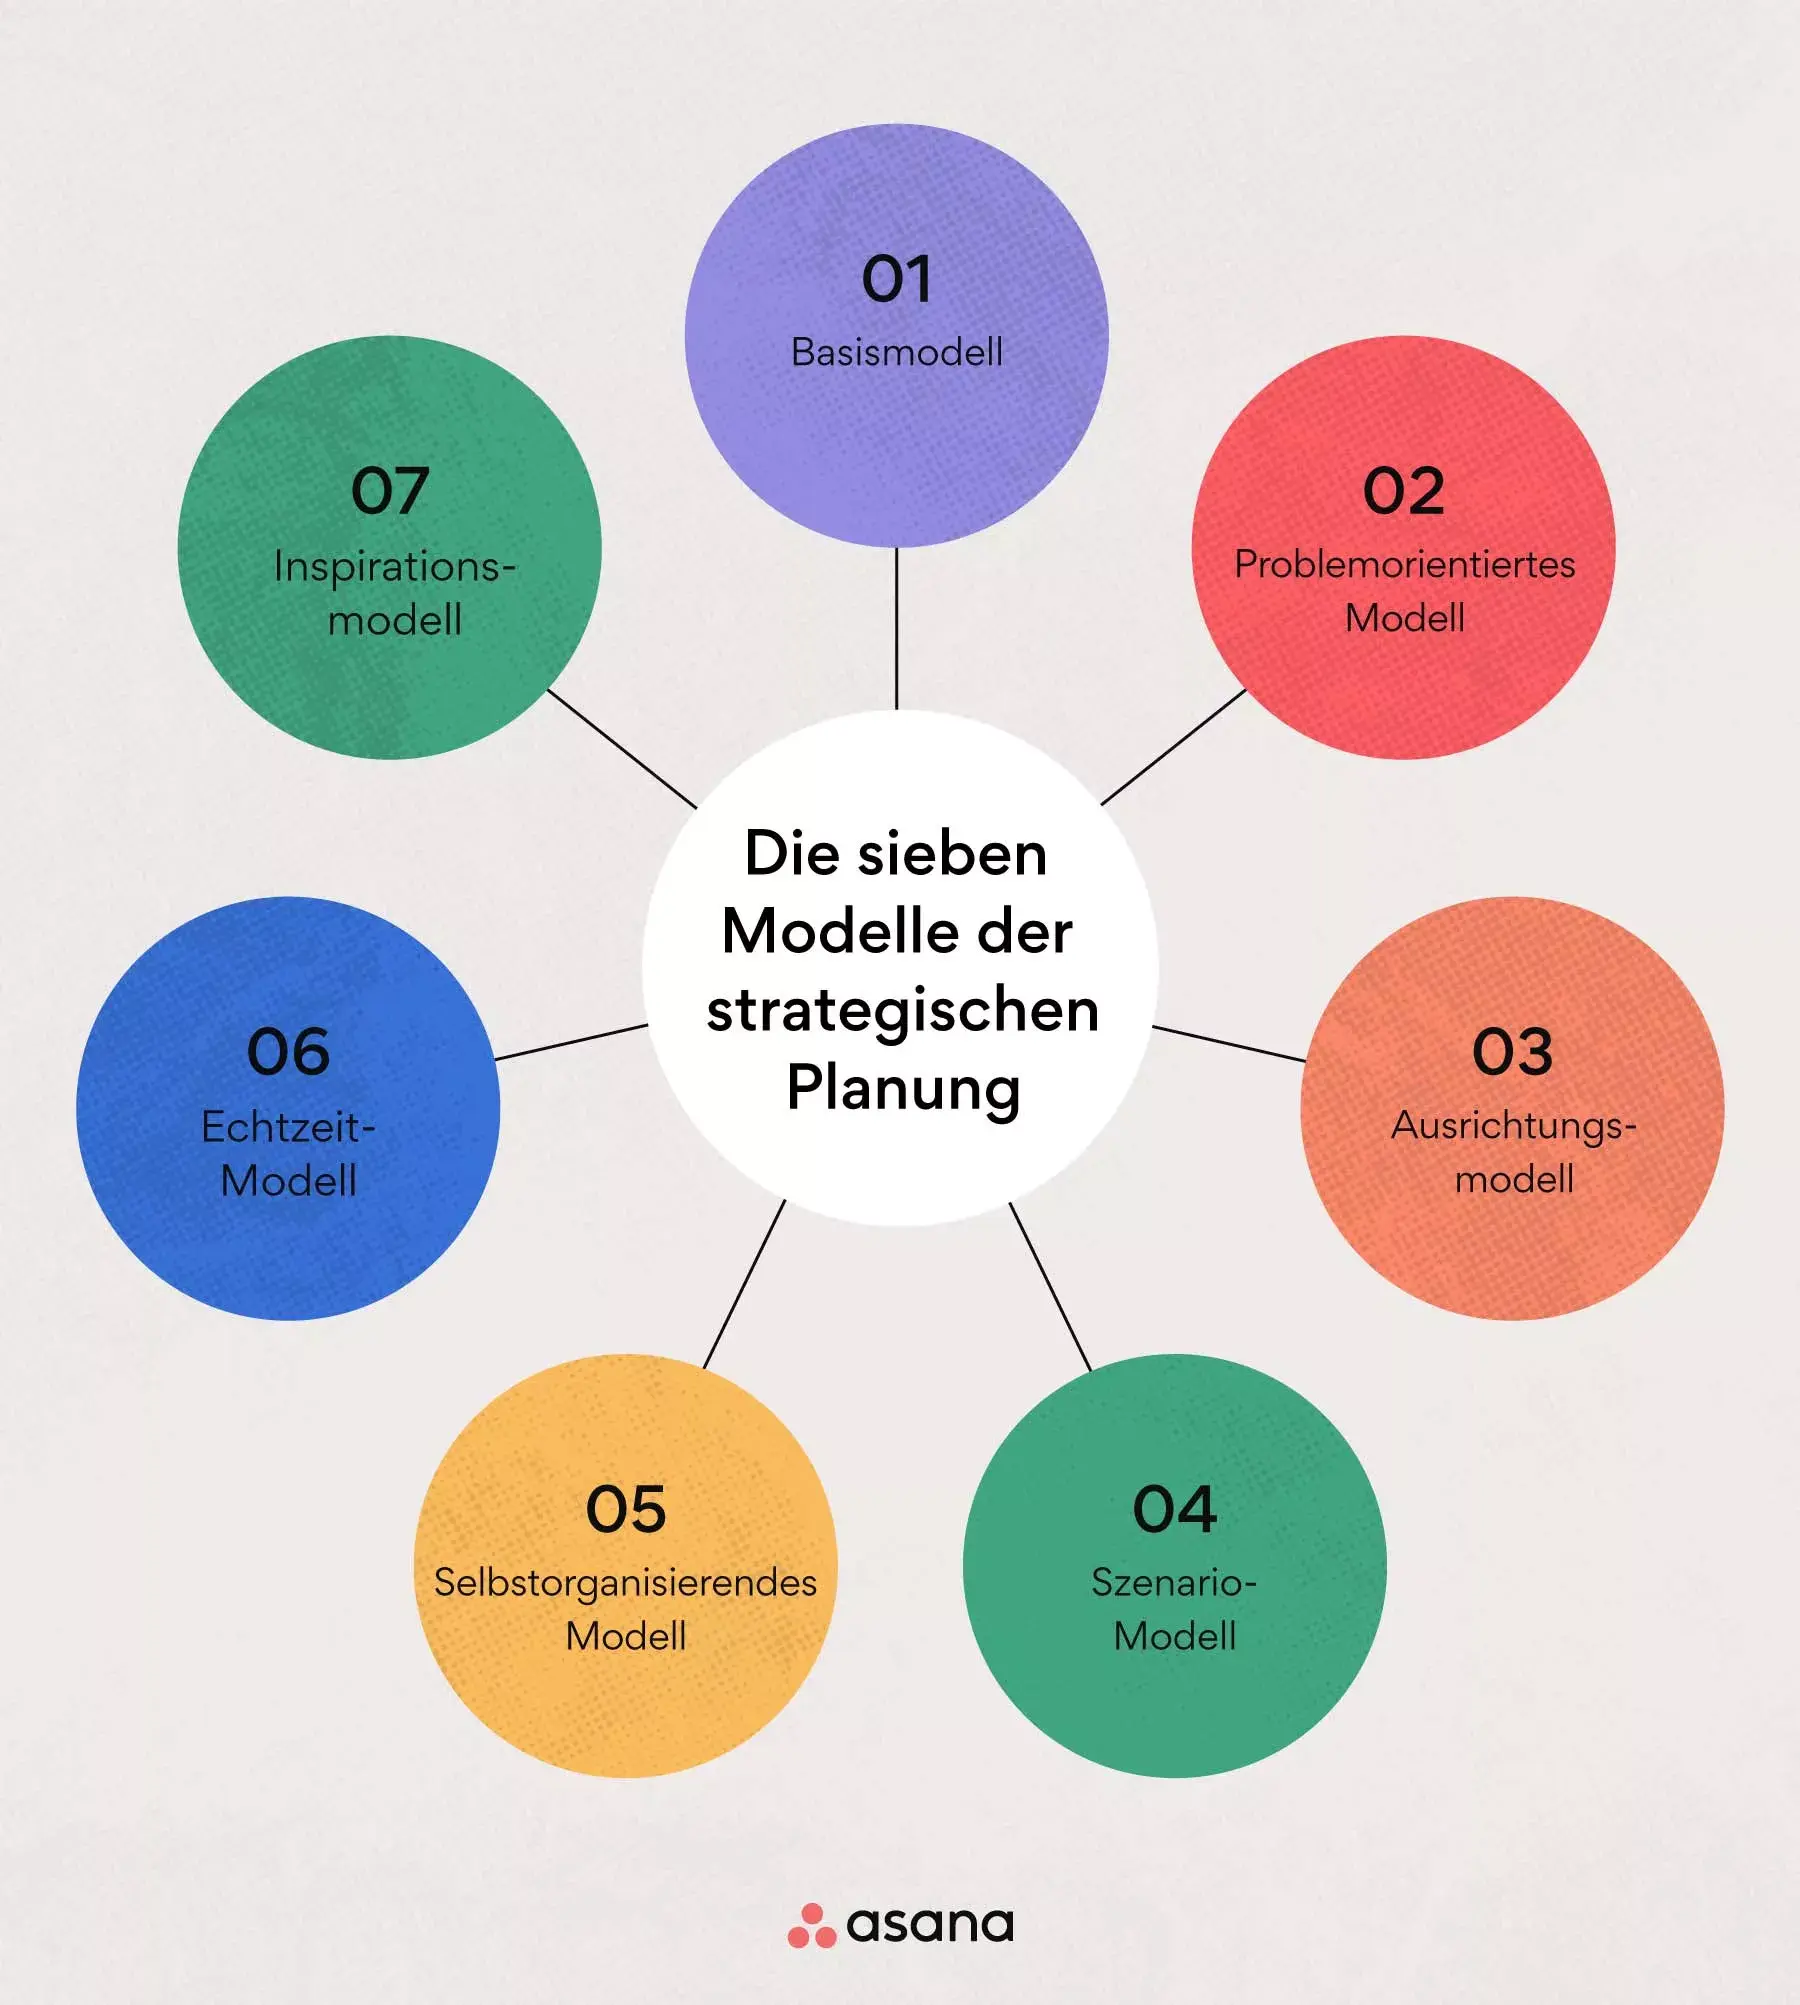 Die sieben Modelle der strategischen Planung